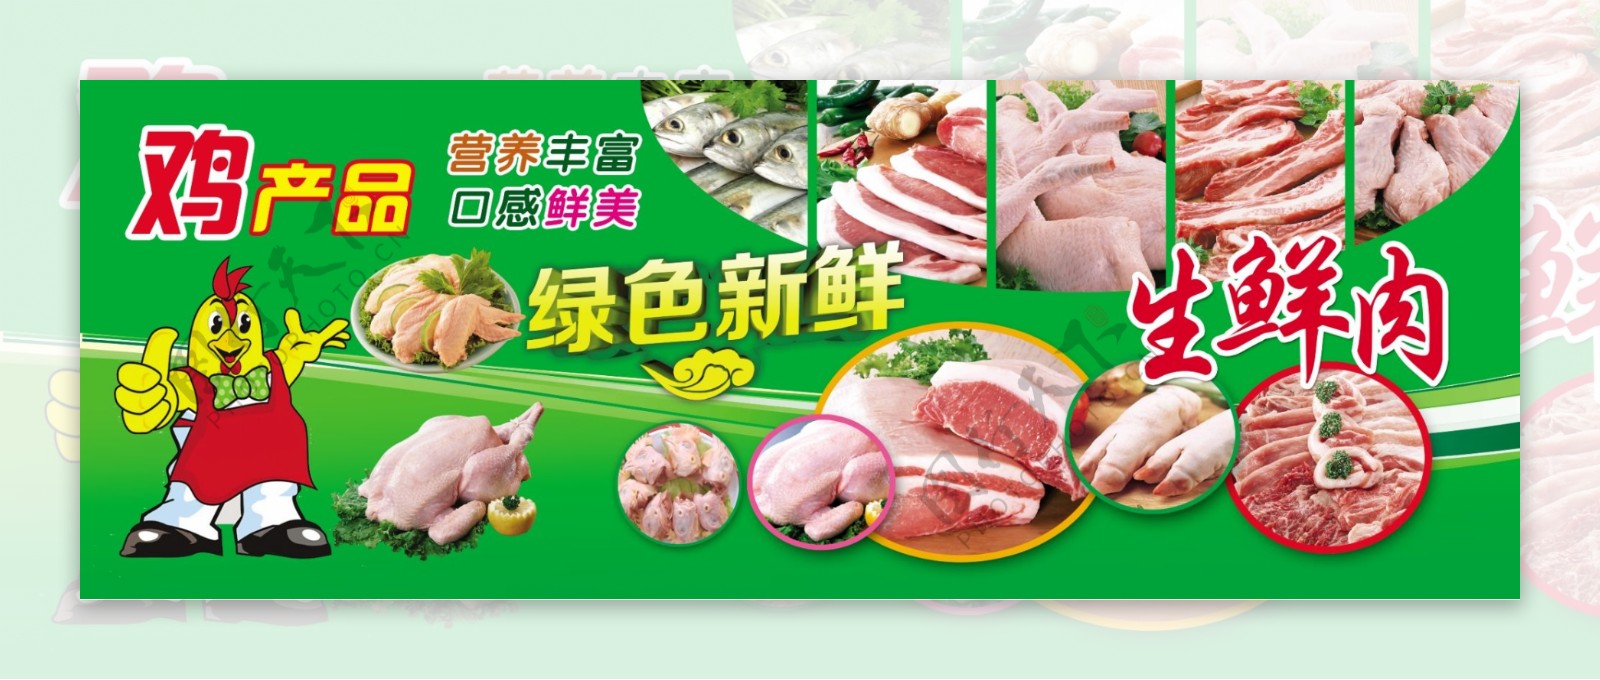 超市海报生鲜肉超市形象画